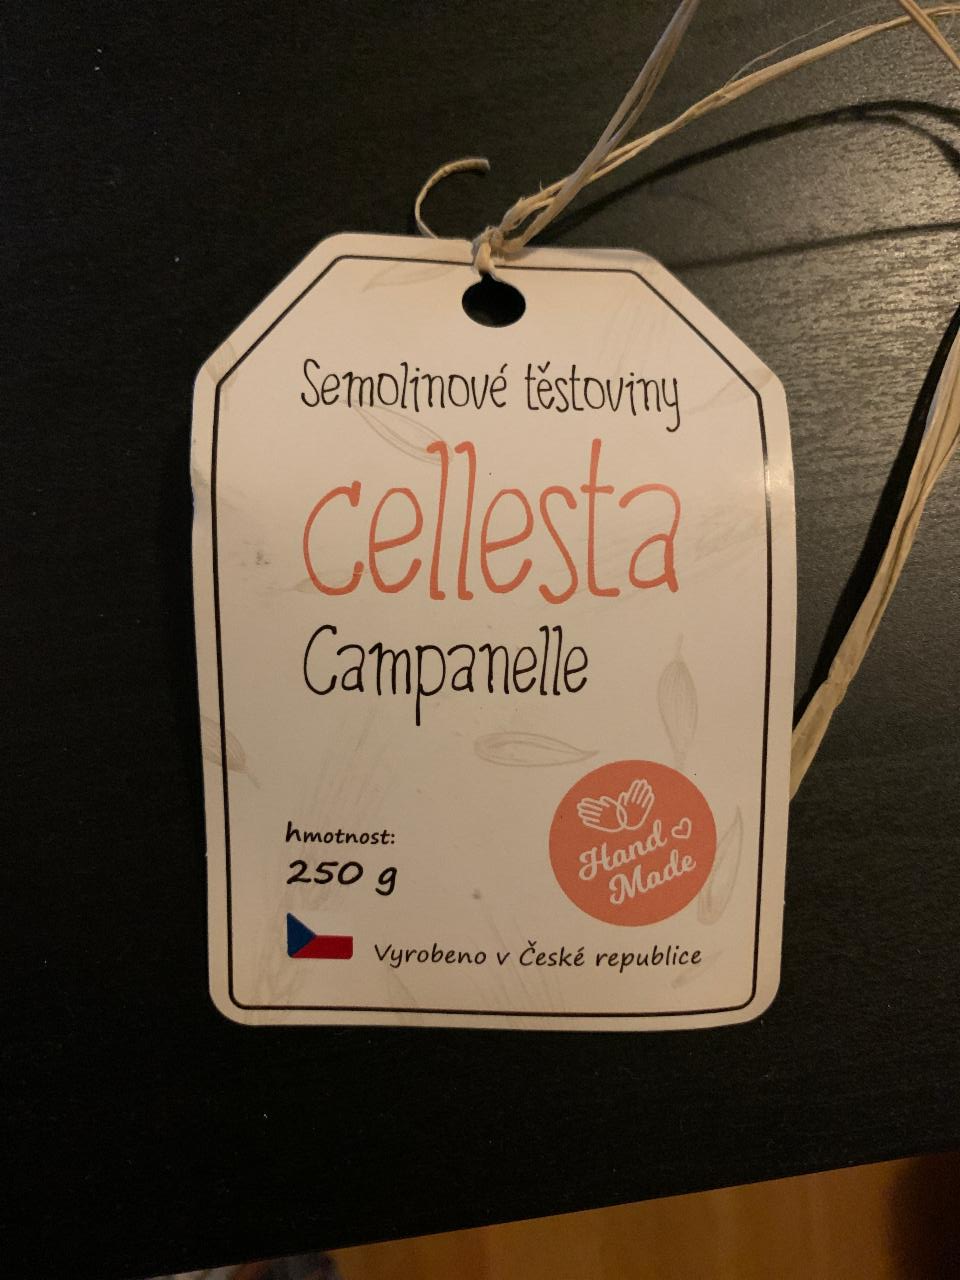 Fotografie - Semolinové těstoviny Campanelle Cellesta